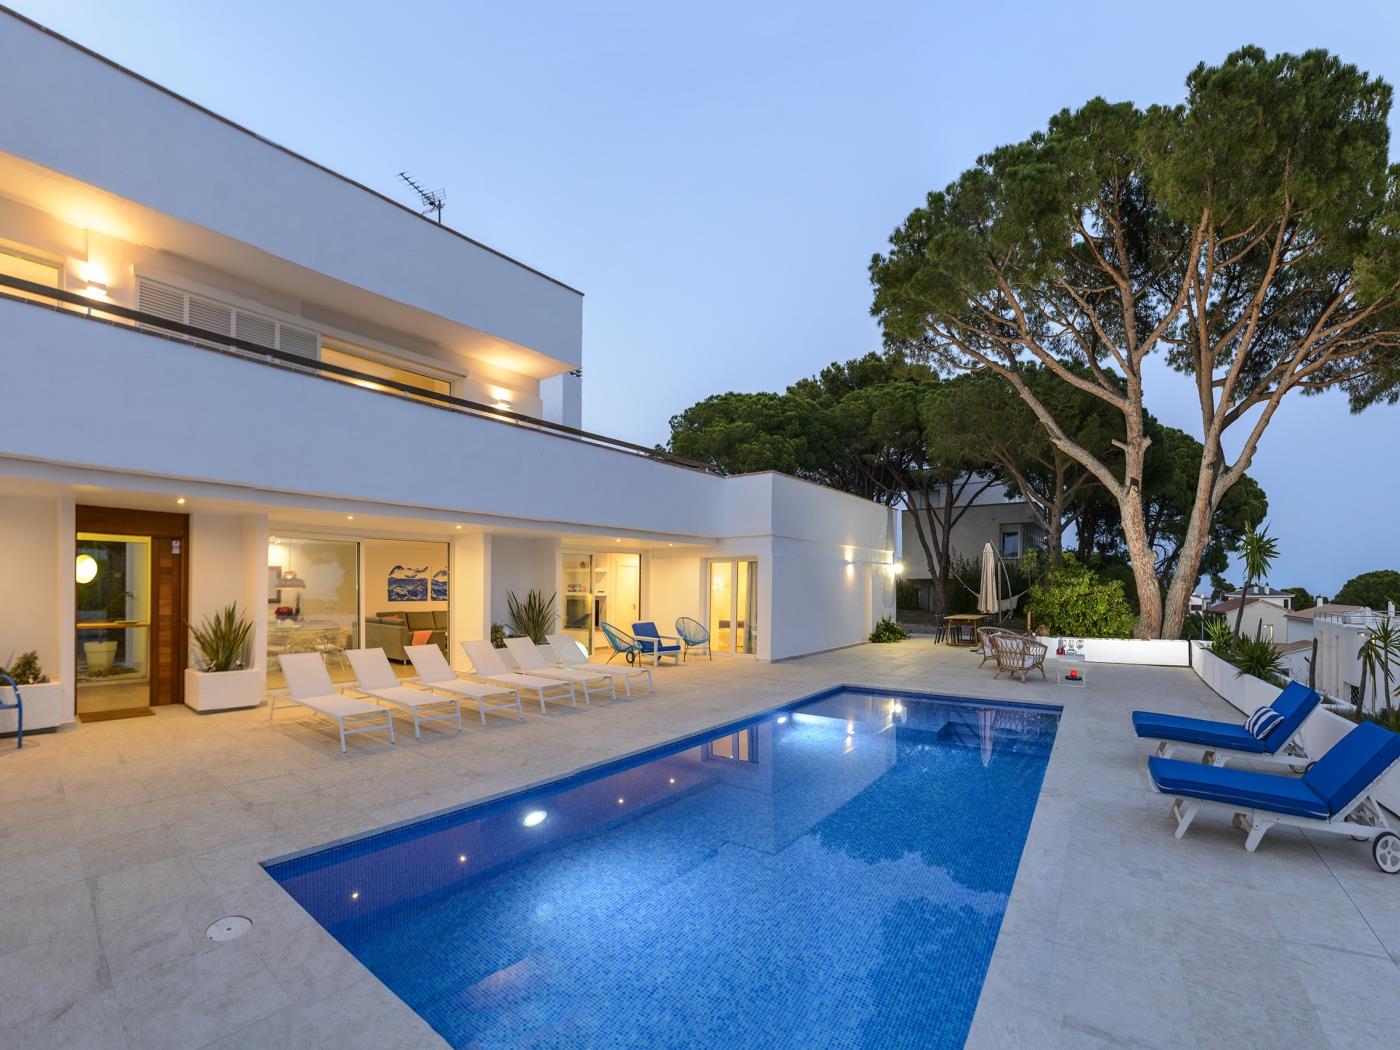 Villa Juca Blanca amb aire condicionat, WIFI gratuït i vista sobre el mar. a Calonge